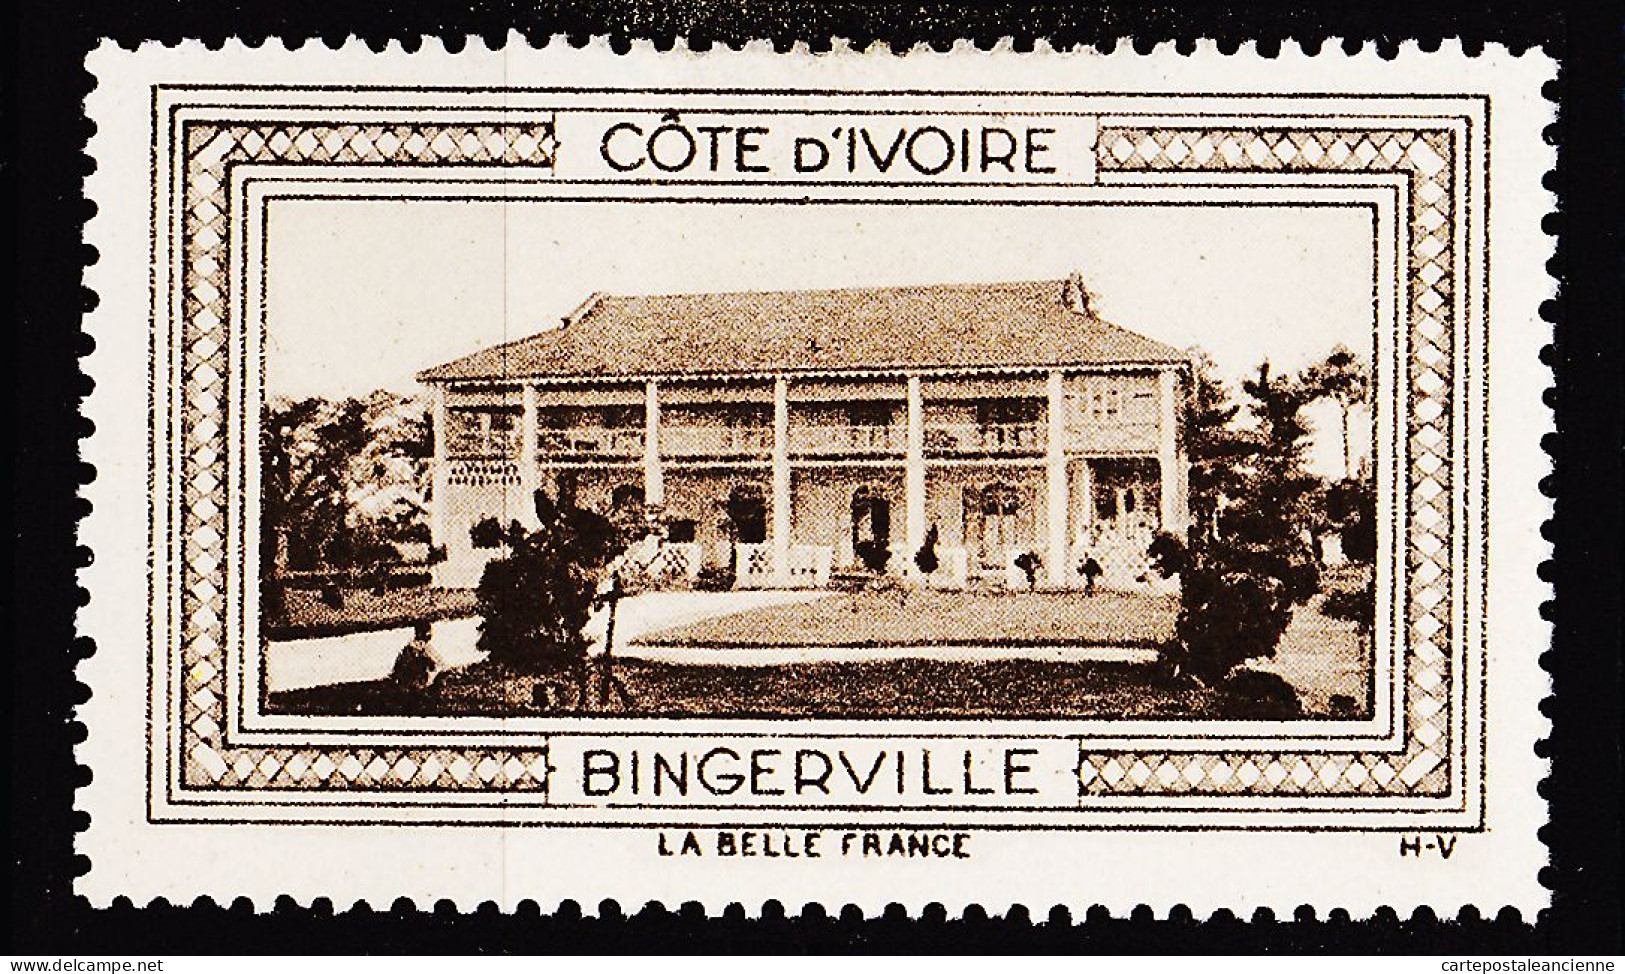 12944 ● BINGERVILLE COTE D'IVOIRE Vignette De Collection LA BELLE FRANCE 1925s H-V Erinnophilie - Tourisme (Vignettes)